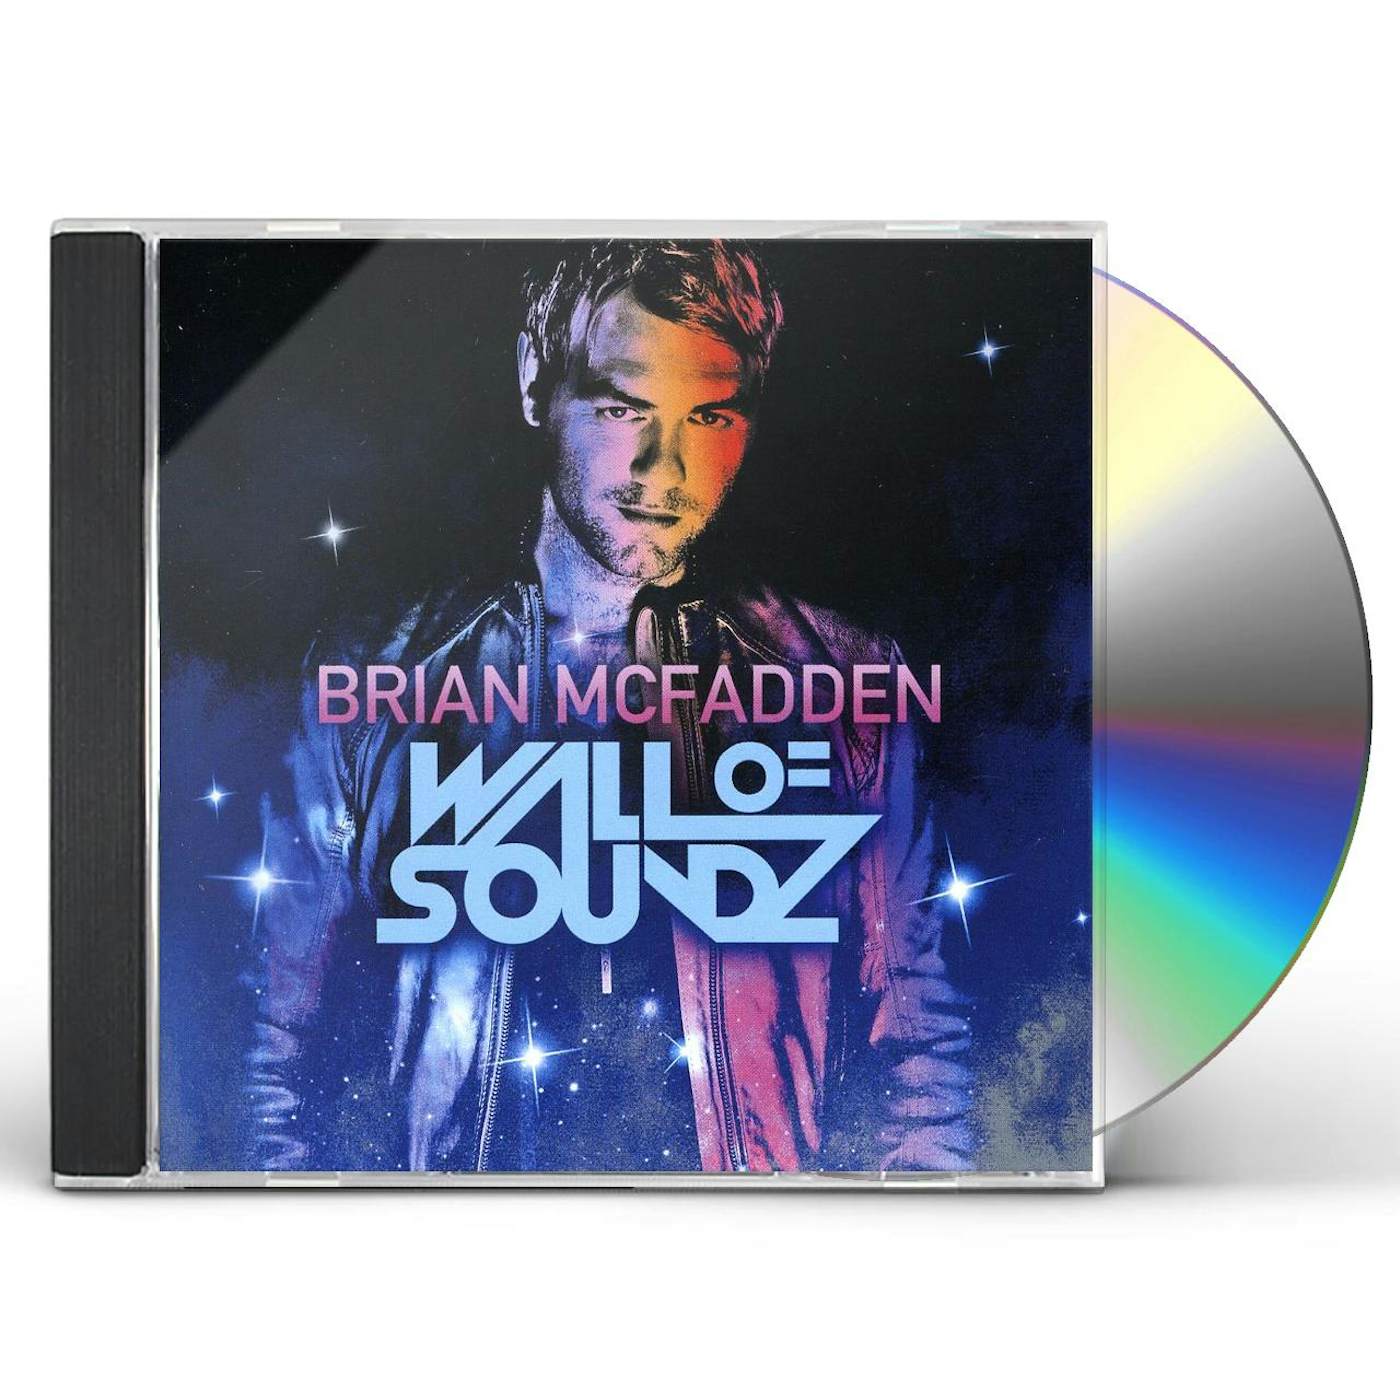 Brian McFadden WALL OF SOUNDZ CD